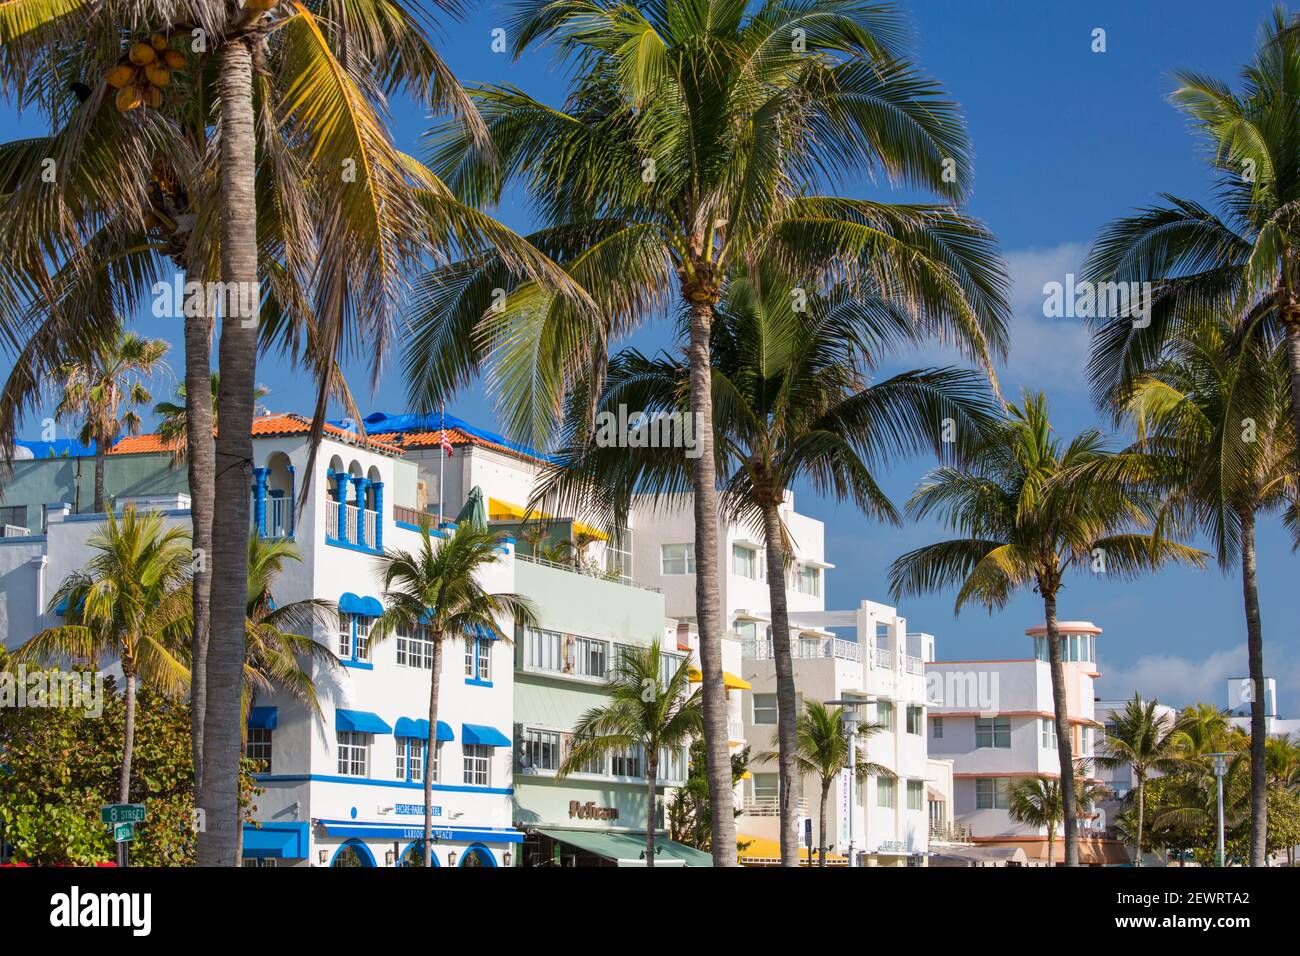 Façades d'hôtel colorées et palmiers imposants, Ocean Drive, quartier historique art déco, South Beach, Miami Beach, Floride, États-Unis d'Amérique Banque D'Images